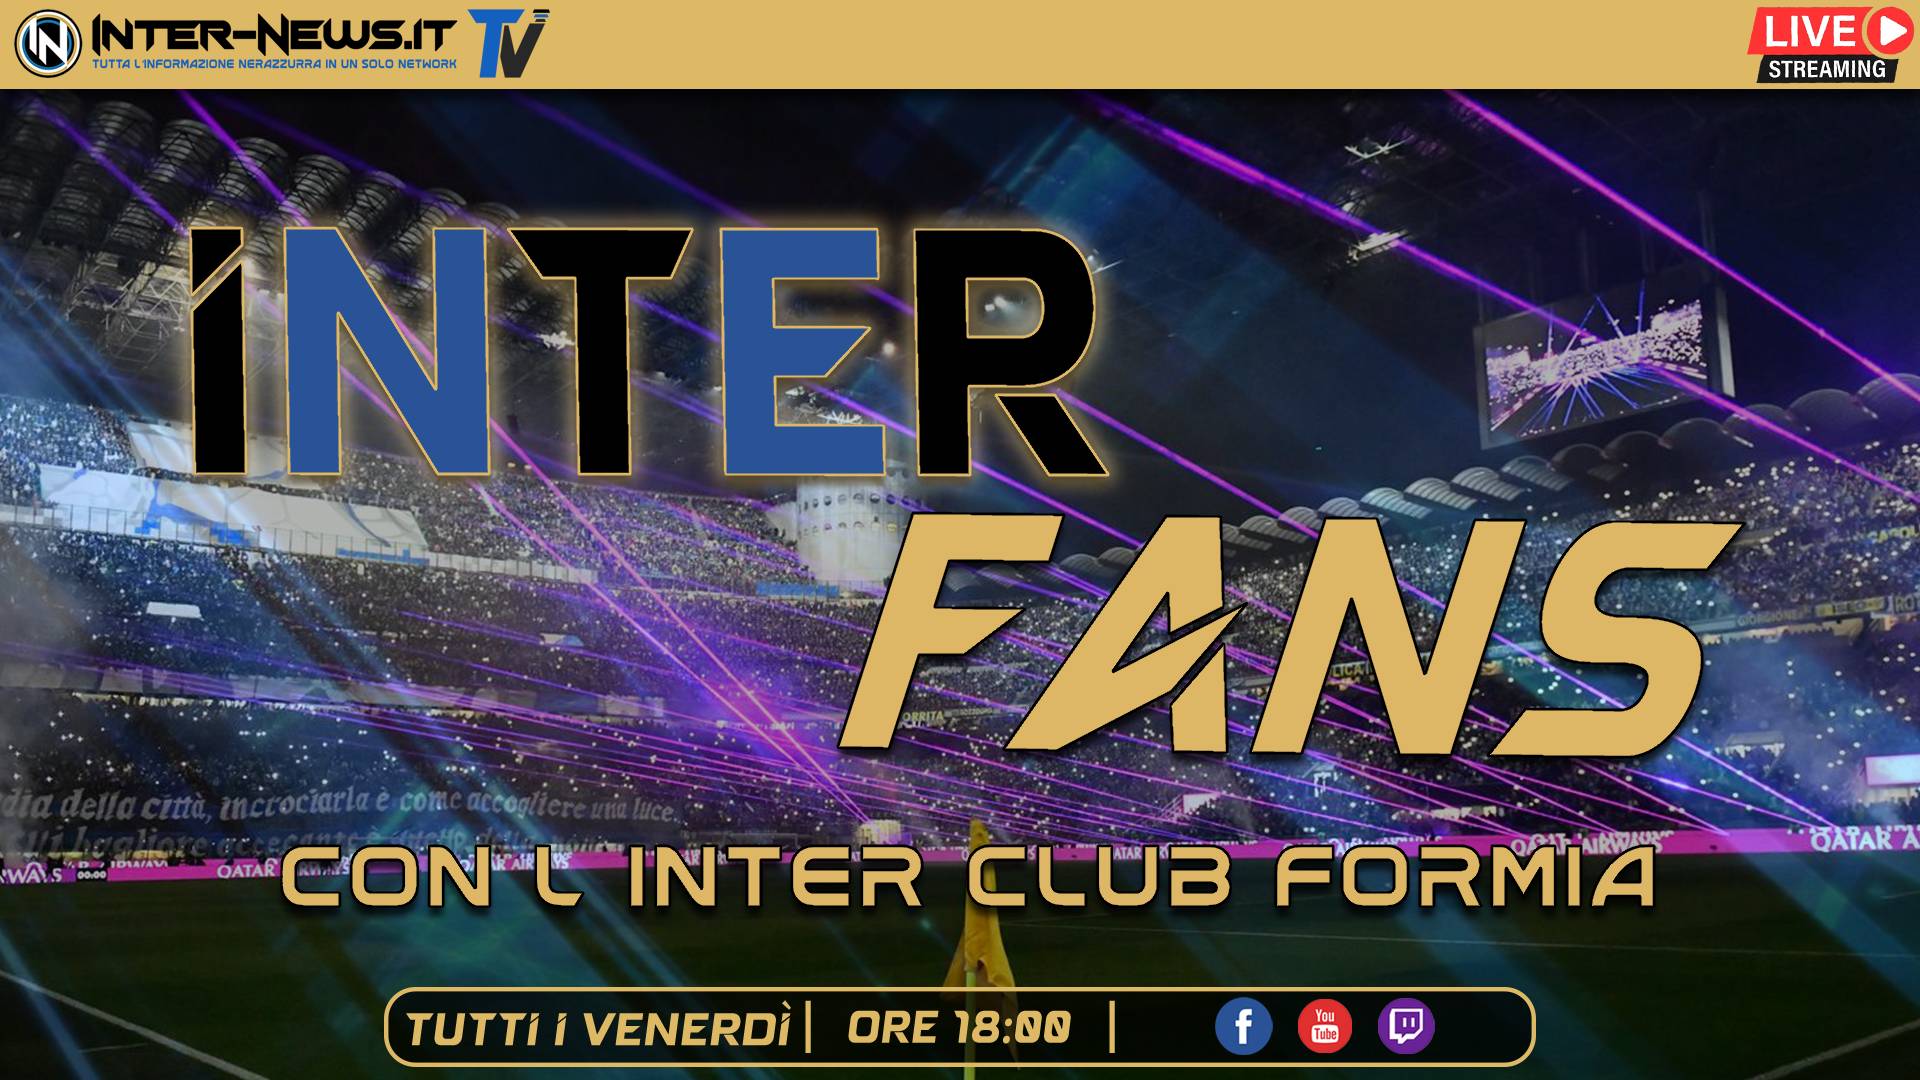 VIDEO ? Inter Fans, oggi la parola ai tifosi dell’Inter Club Formia! | Inter News TV